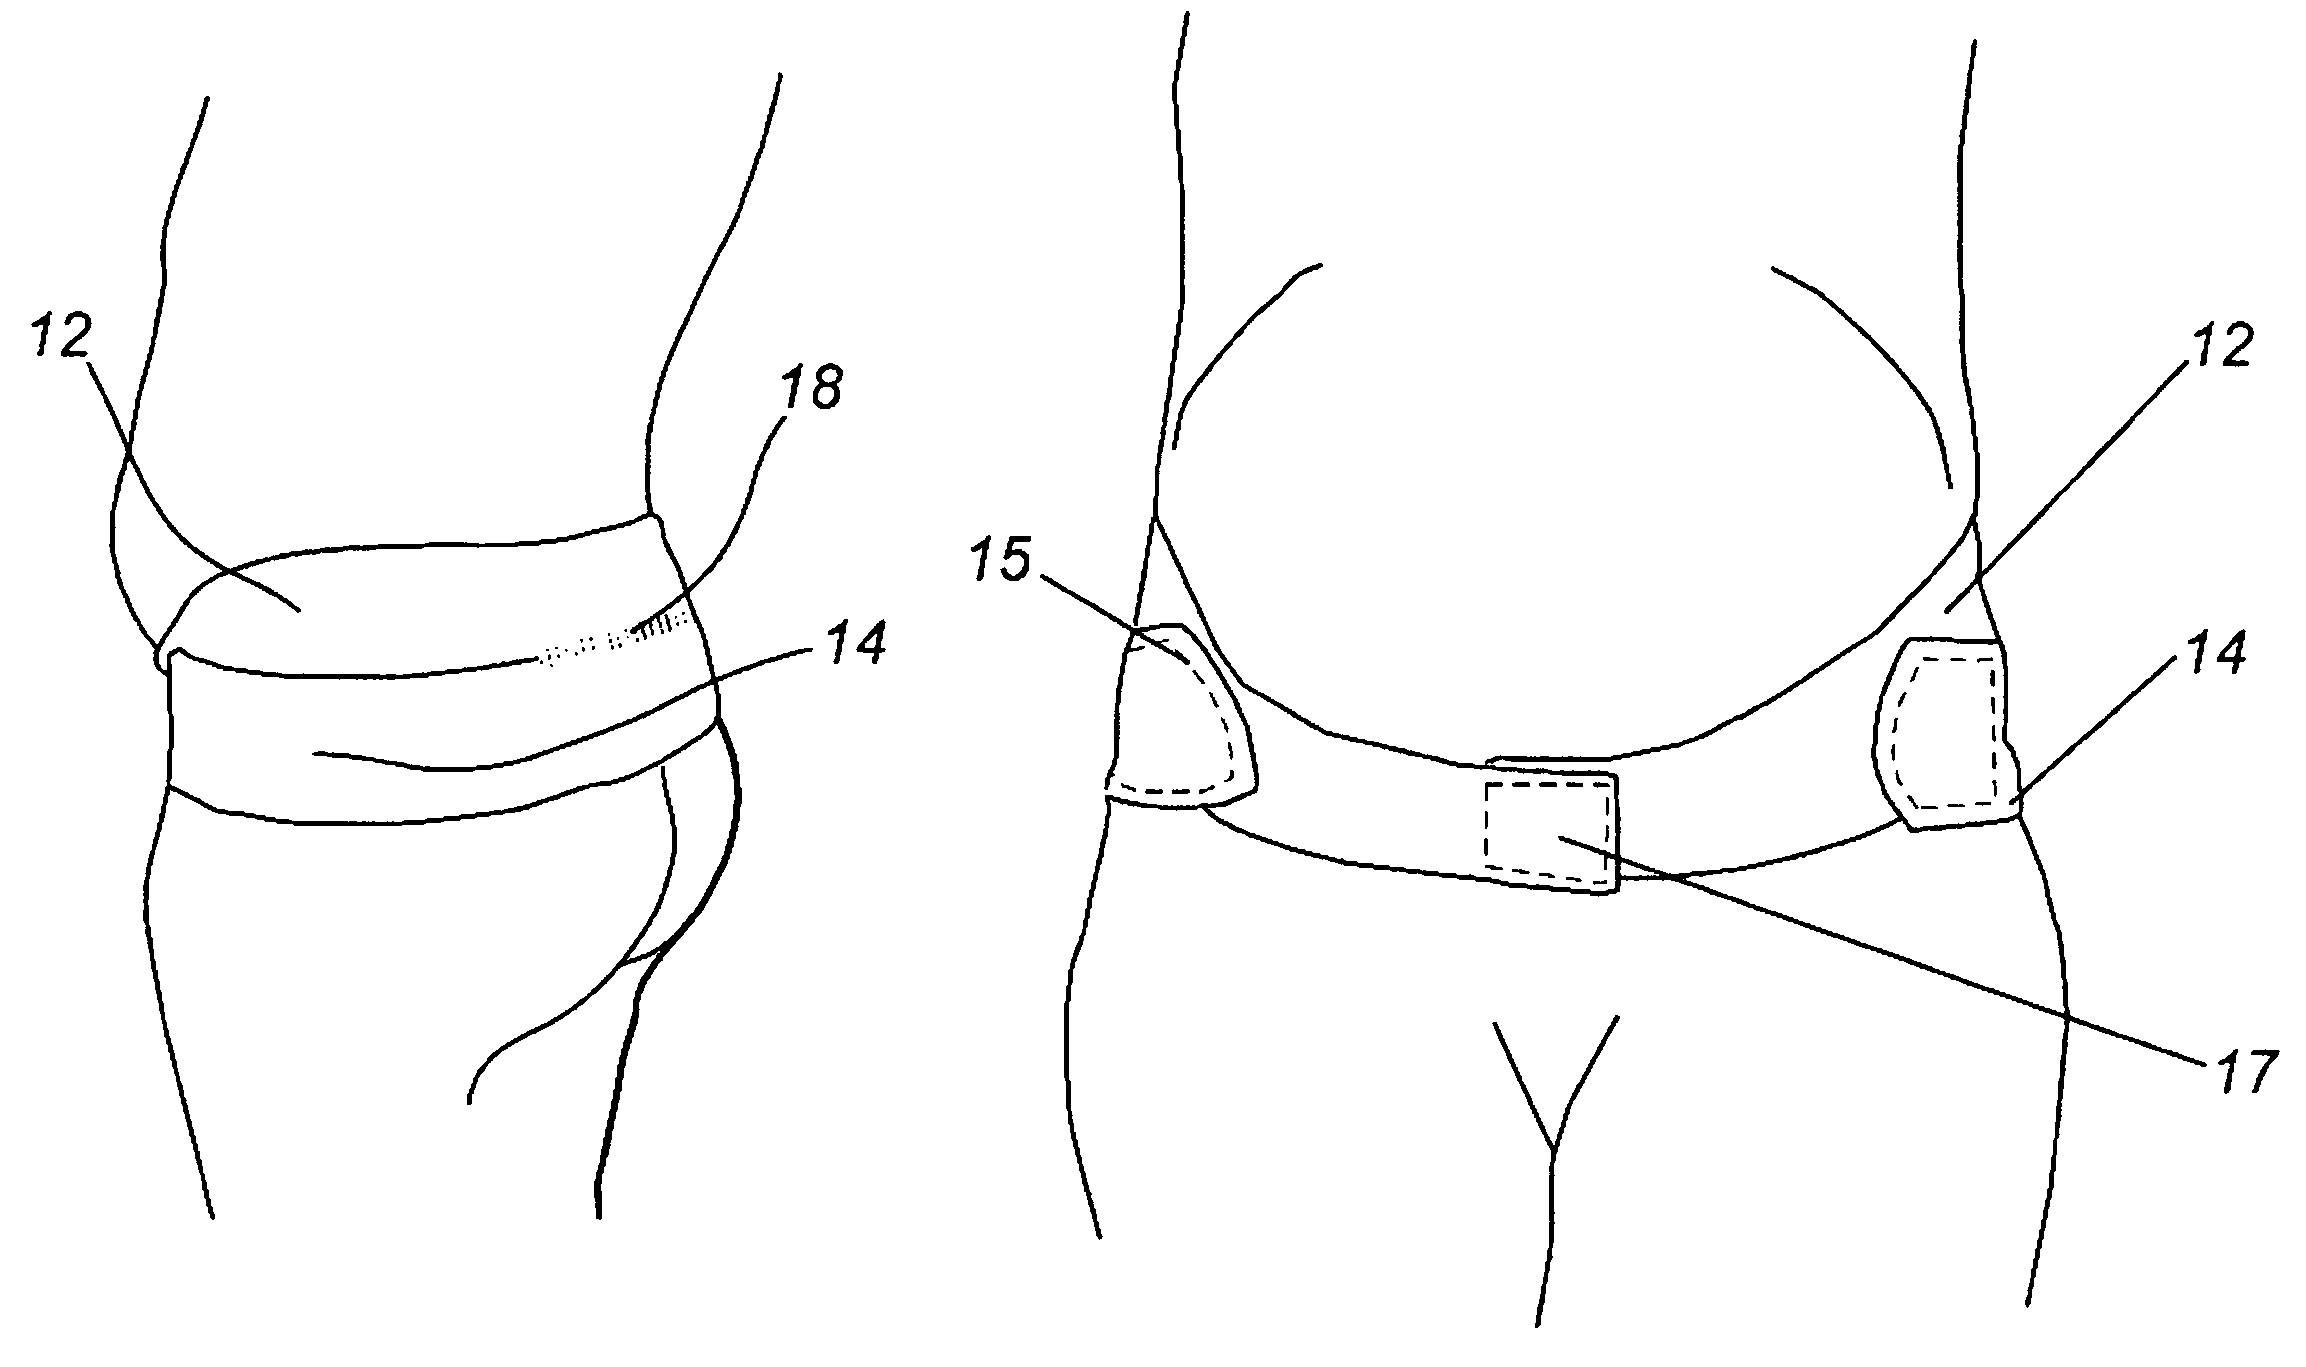 Lower uterine segment maternity support belt